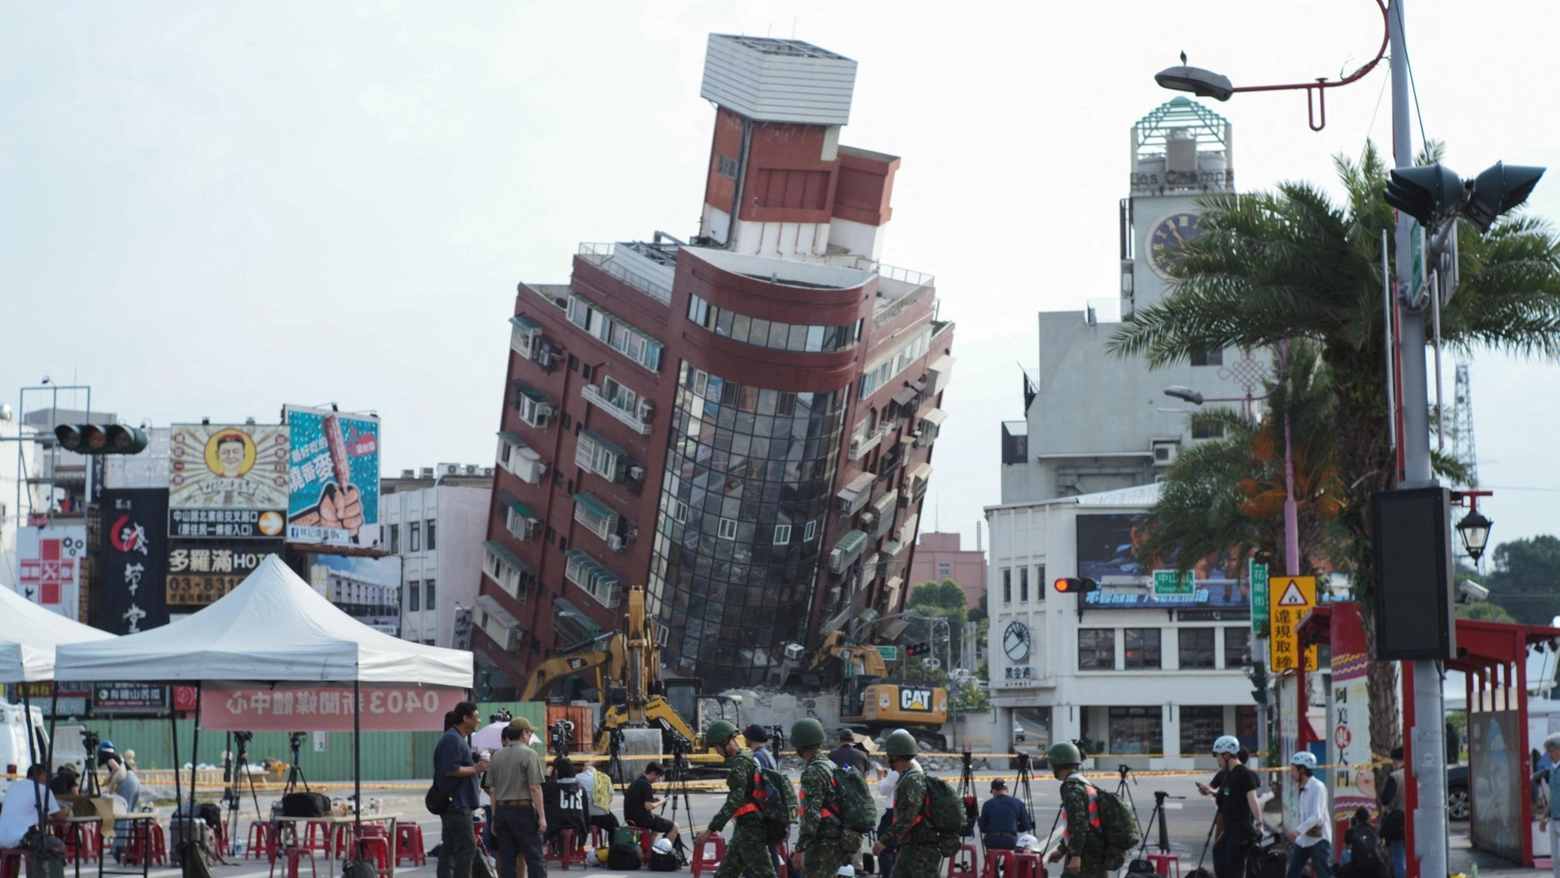 Uranus, il palazzo inclinato a 45 gradi dopo il terremoto di Taiwan